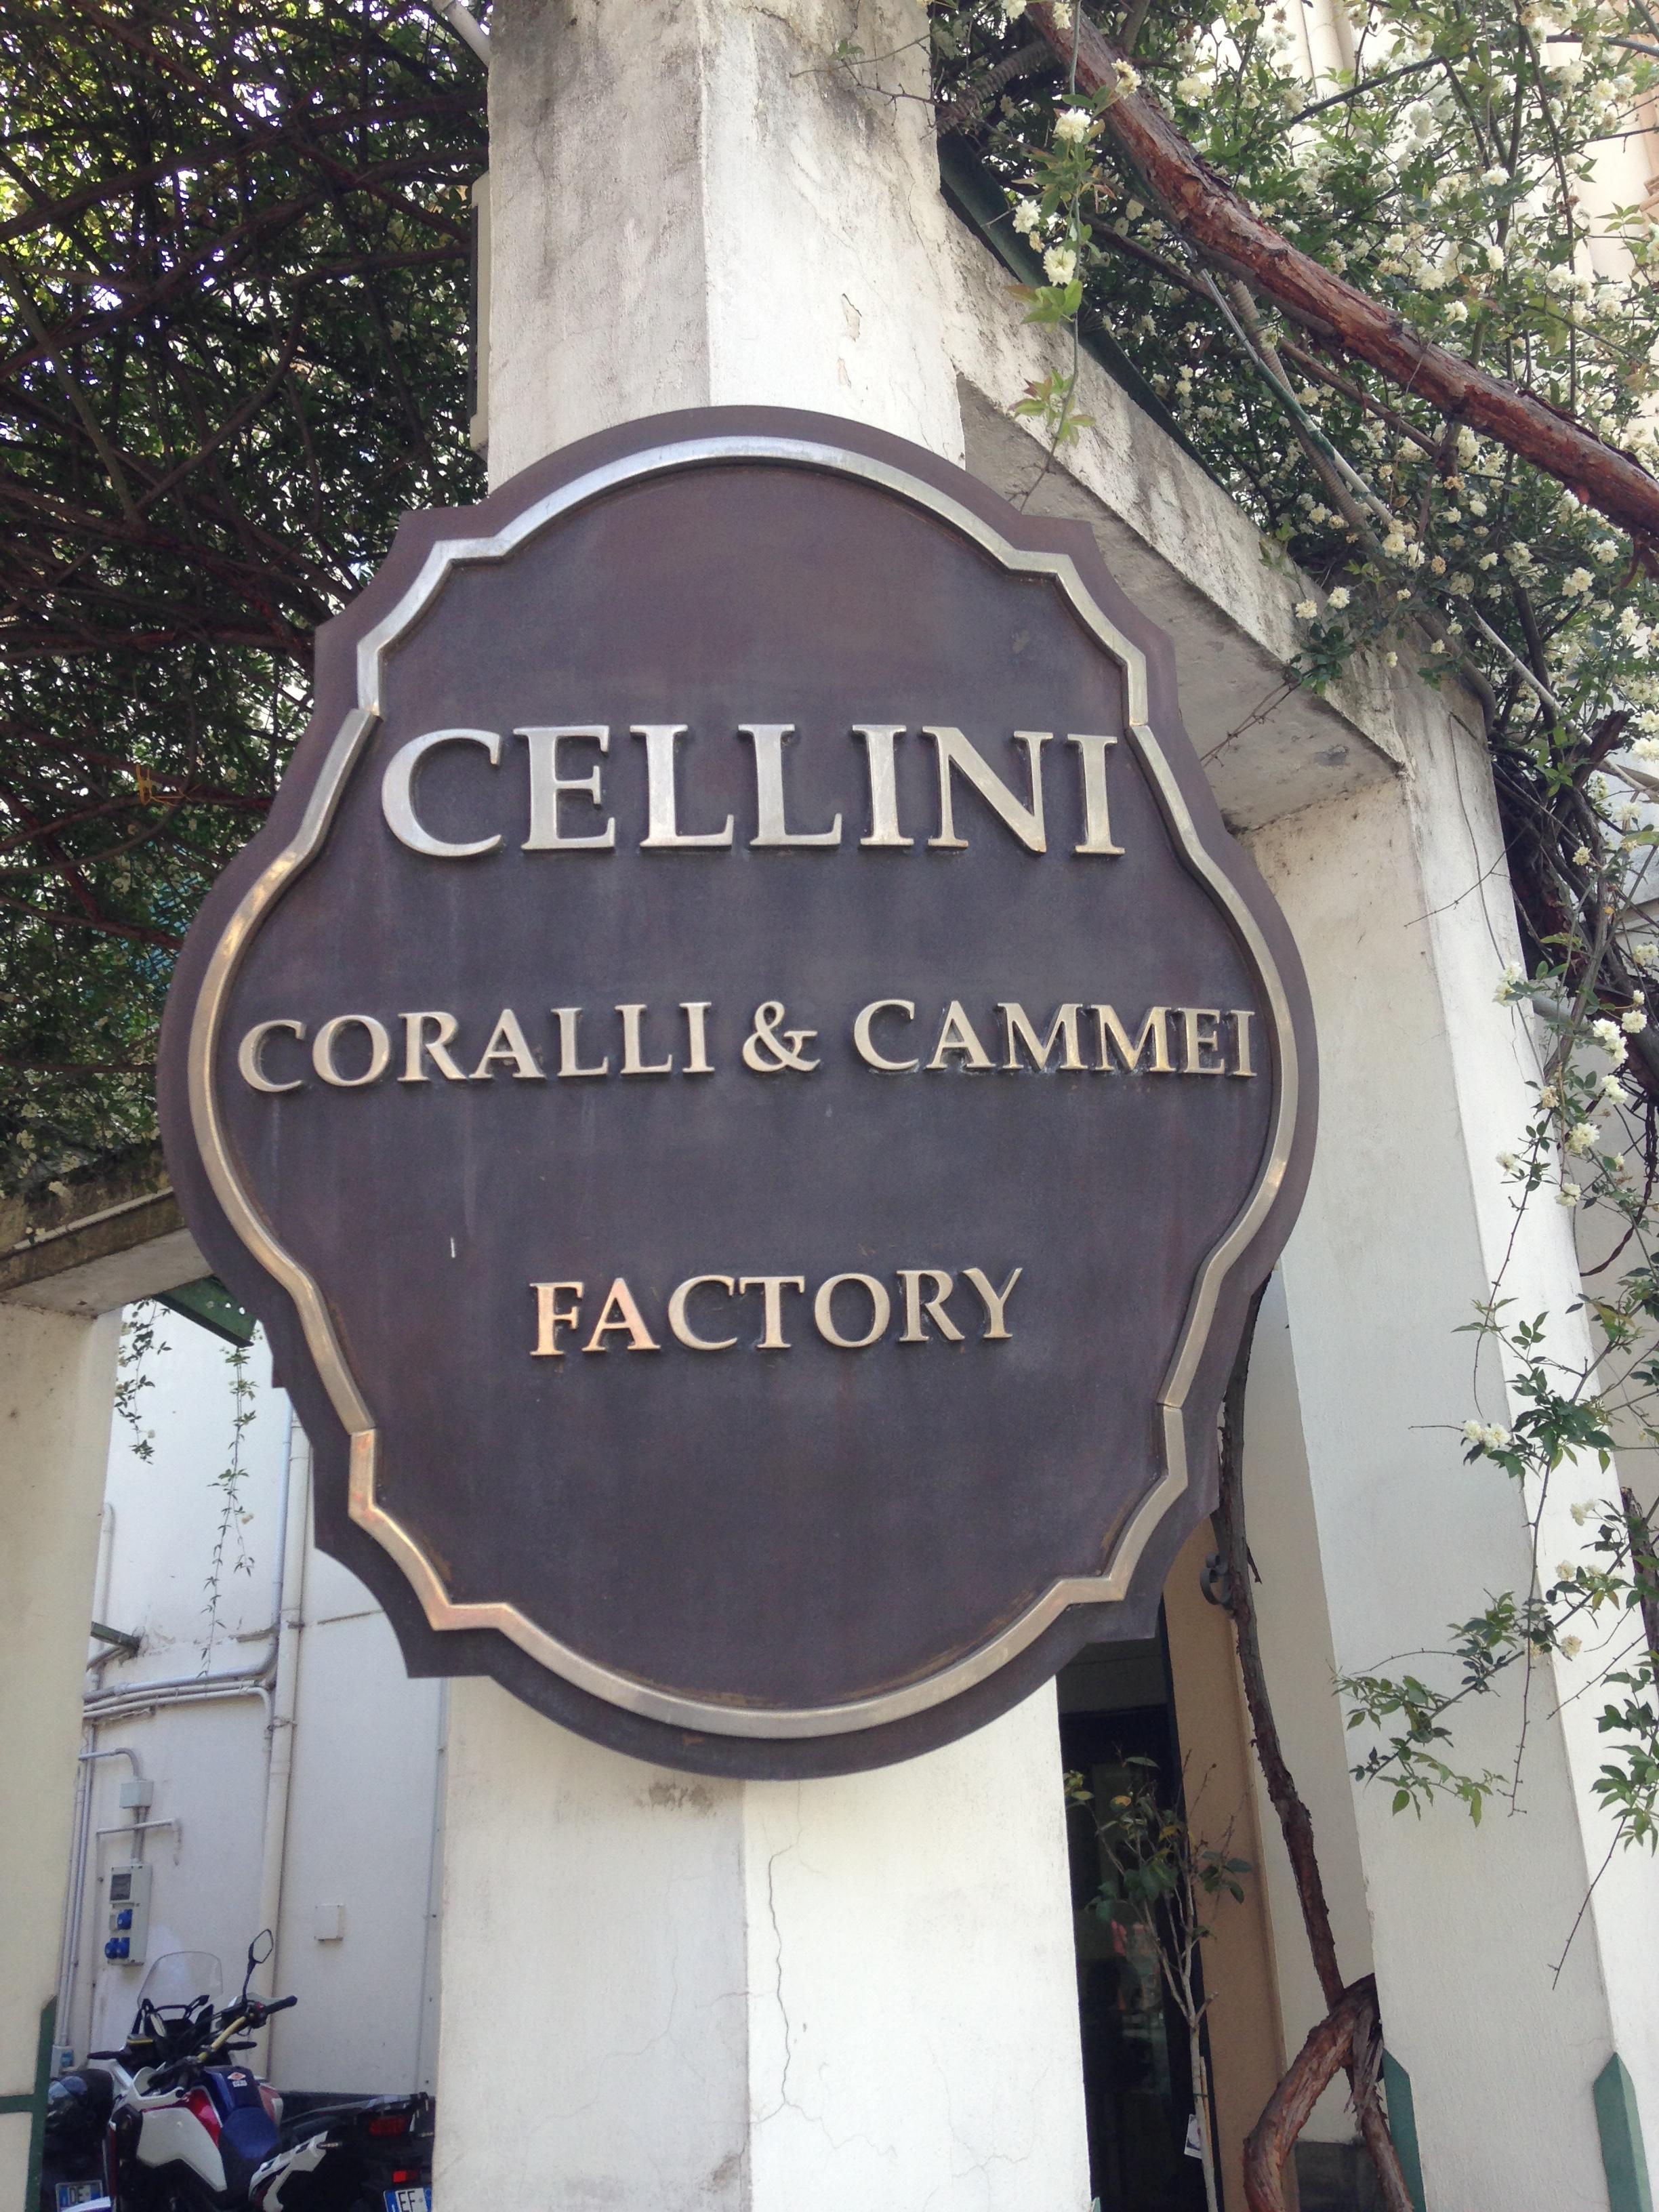 Cellini Gallery Cameos & Corals